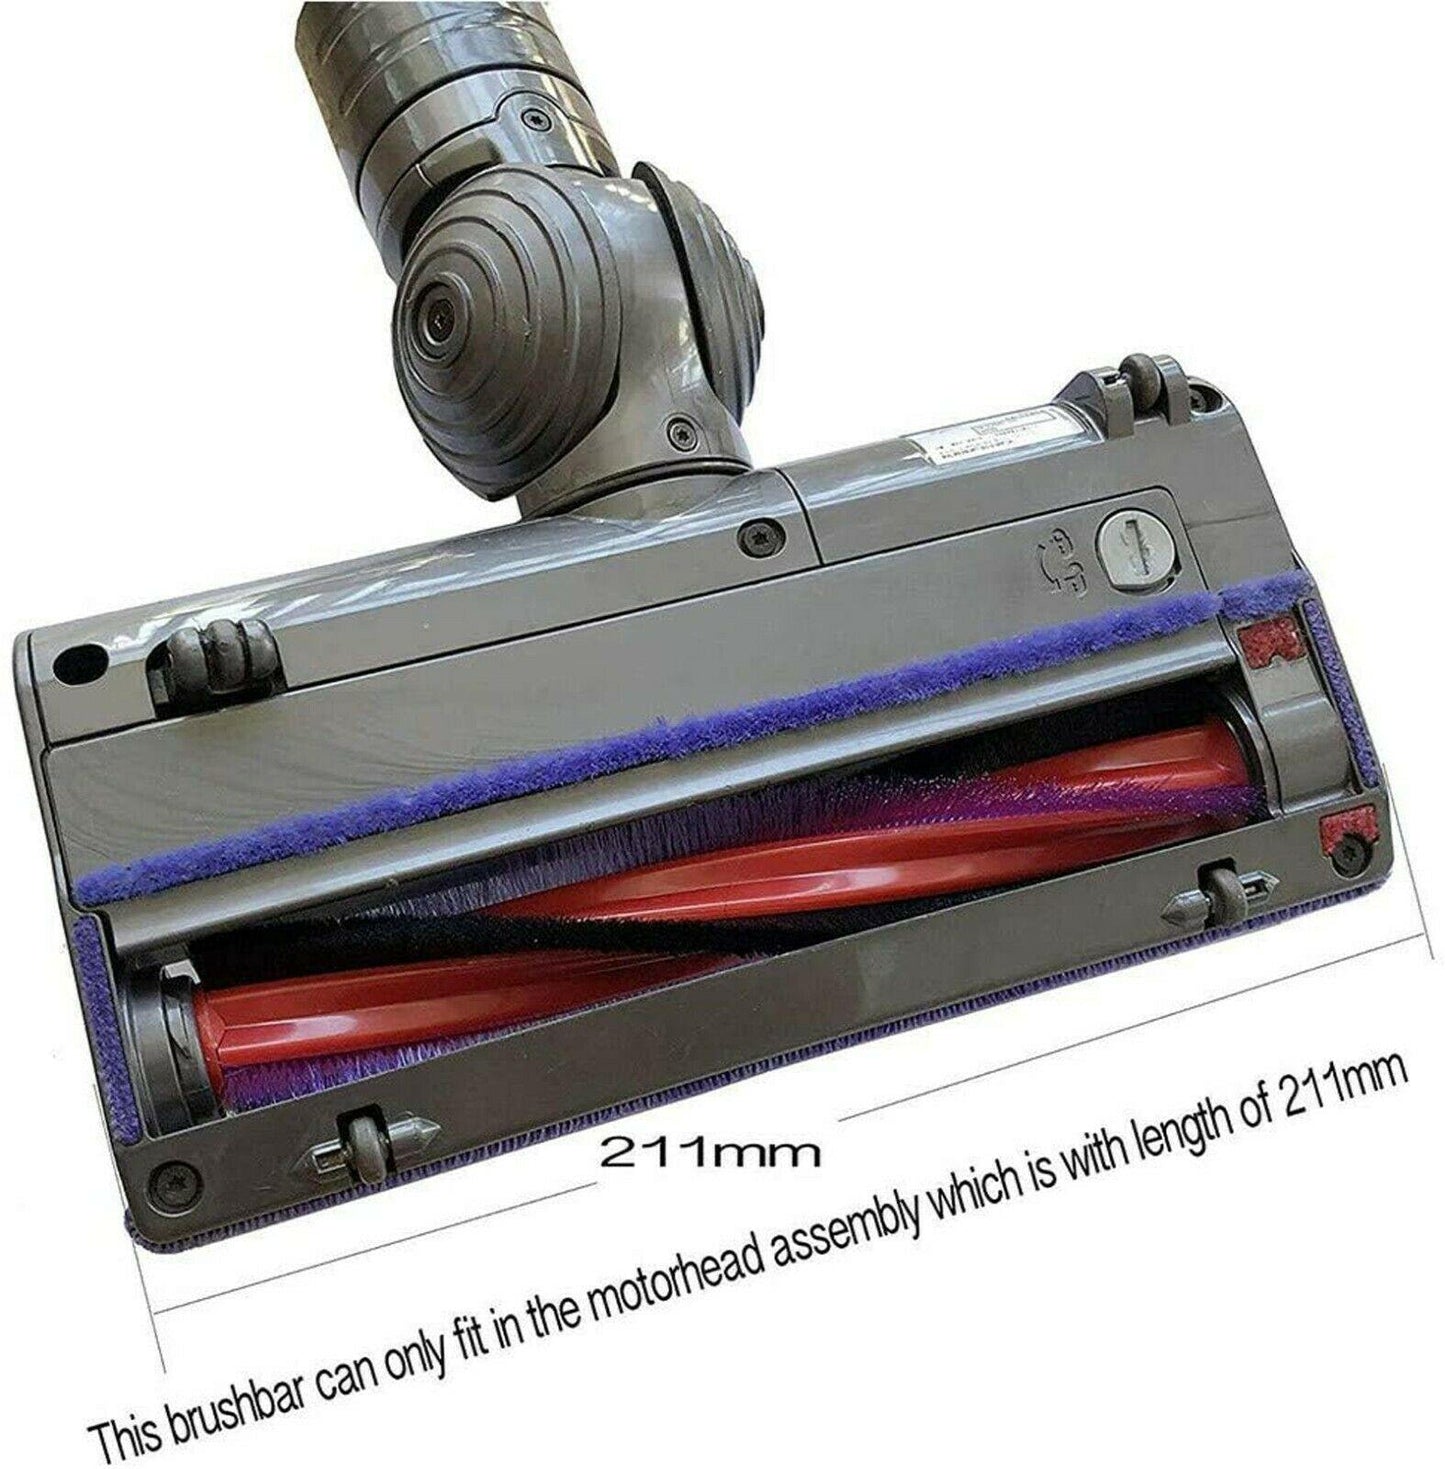 Brush bar Roller 185mm For Dyson V6 SV03 Slim 963830-01 DY-96383001 Agitator Ass Sparesbarn